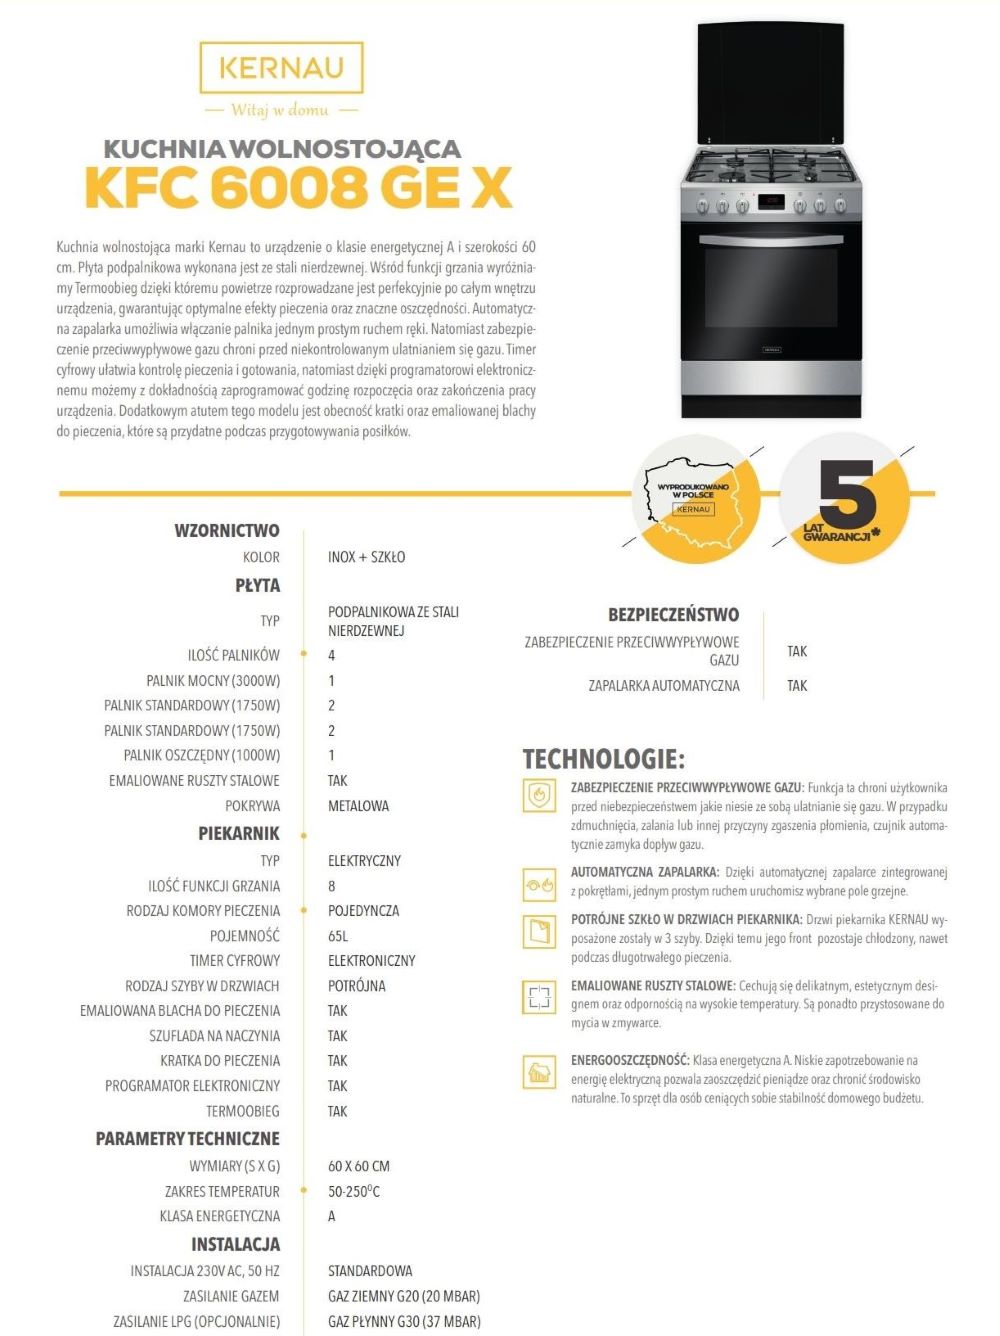 Kuchnia gazowo-elektryczna KERNAU KFC 6008 GE X